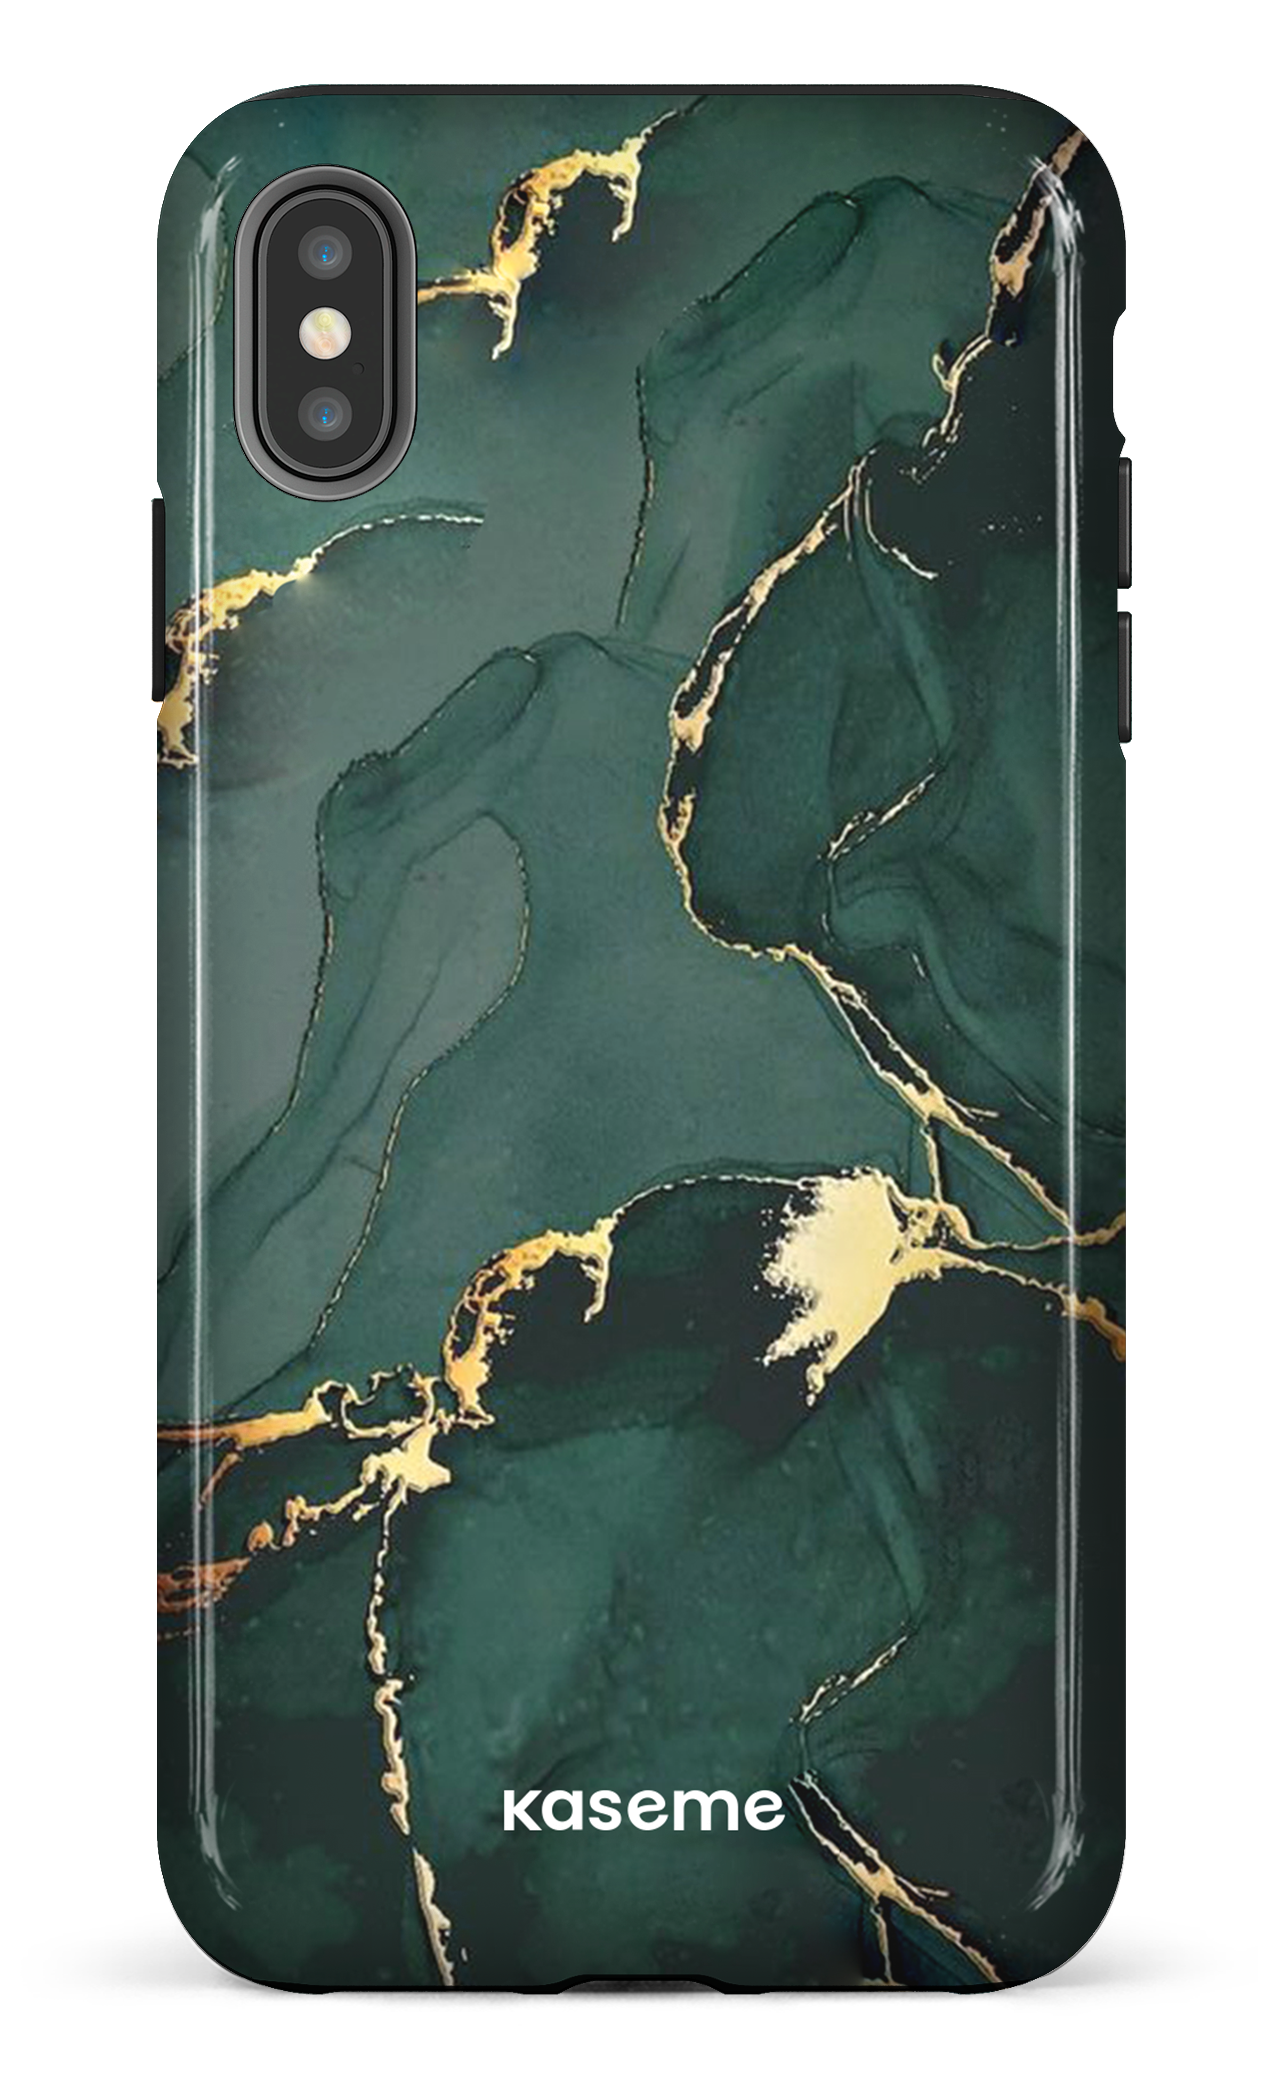 Jade - iPhone XS Max